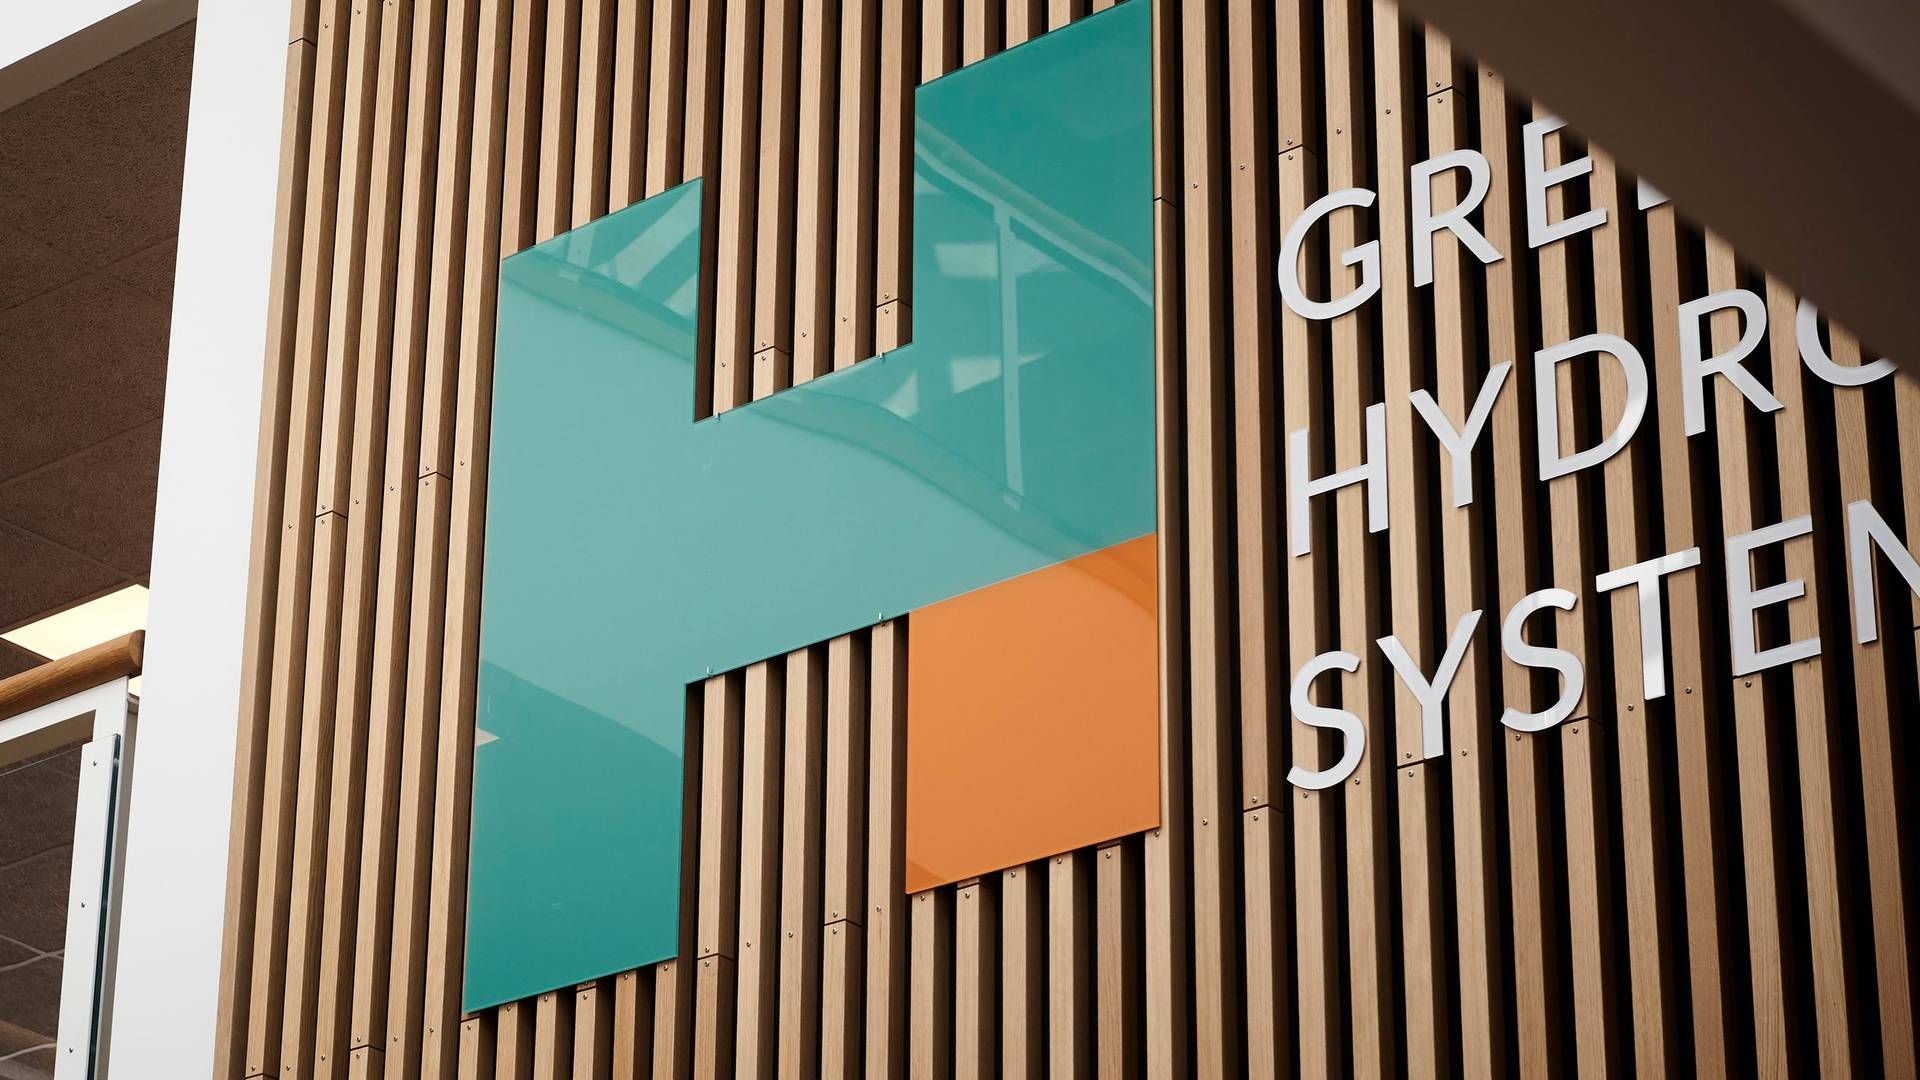 Green Hydrogen Systems er klar med en stor aktieudvidelse. | Foto: Green Hydrogen Systems/pr